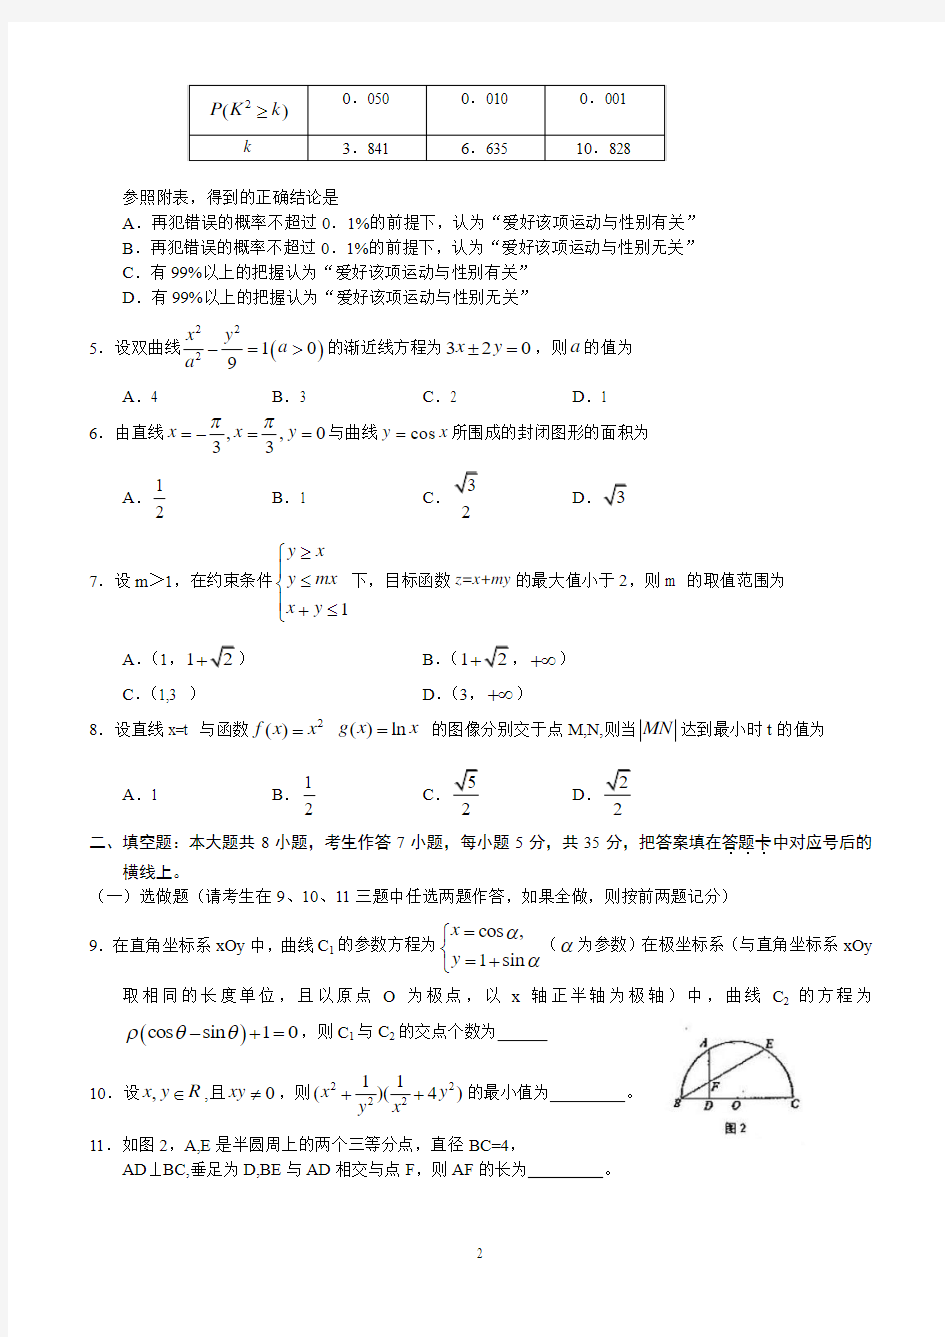 2011年高考湖南卷理科数学试题及答案